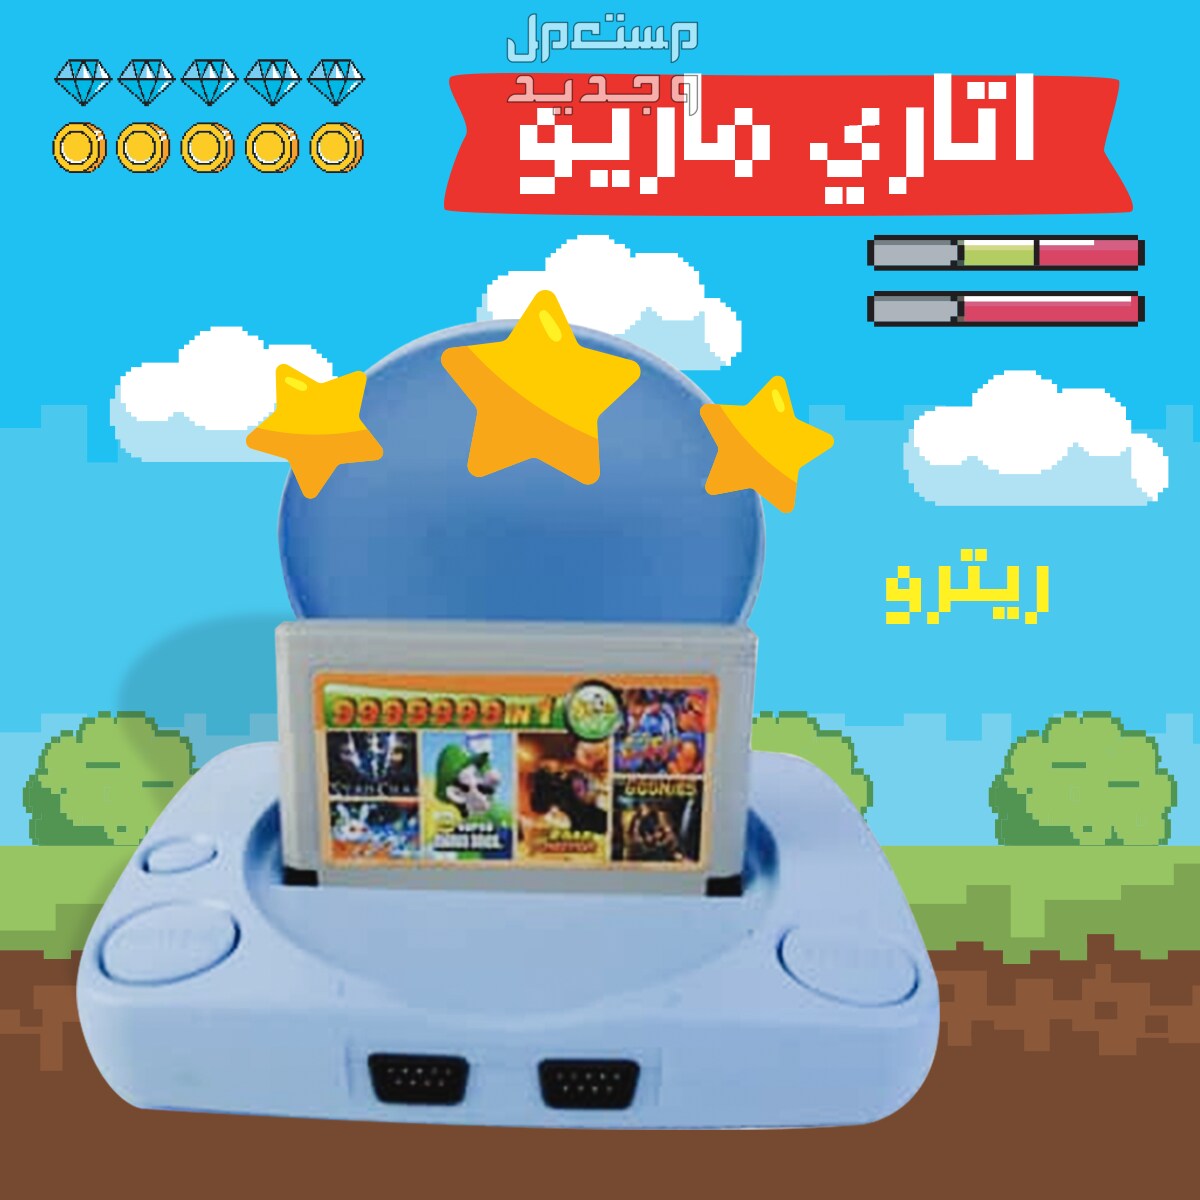 عرض ثنائي يشمل جهاز ألعاب الفيديو مع اتاري ماريو ريترو متوفر للطلب لكل المدن والتوصيل والشحن مجانا